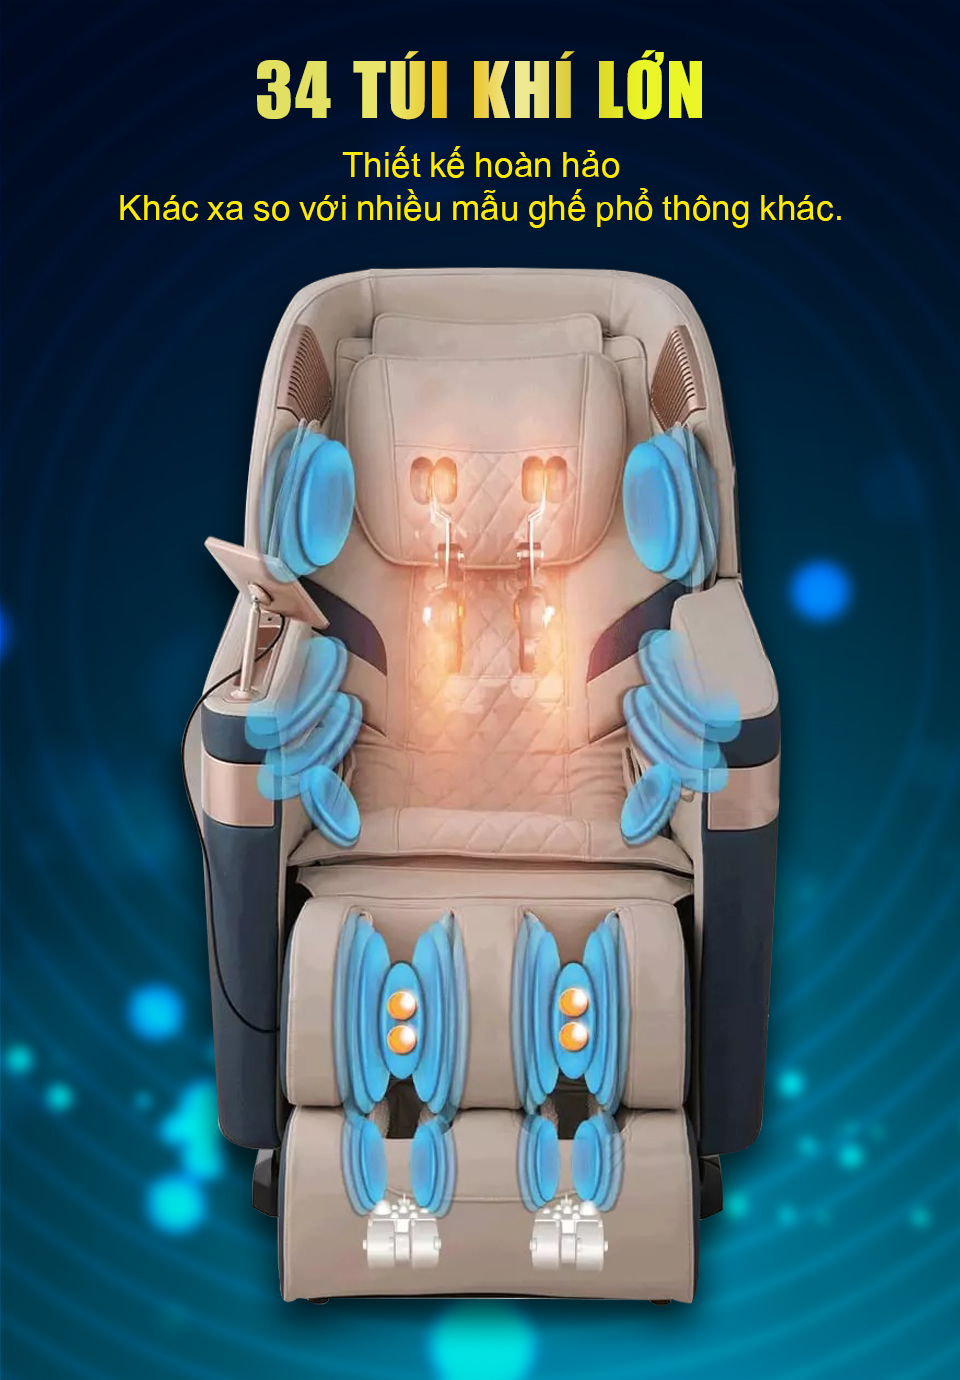 Ghế massage Haruko J9 được trang bị một số lượng lớn túi khí với thiết kế hoàn hảo khác biệt với các sản phẩm phổ thông